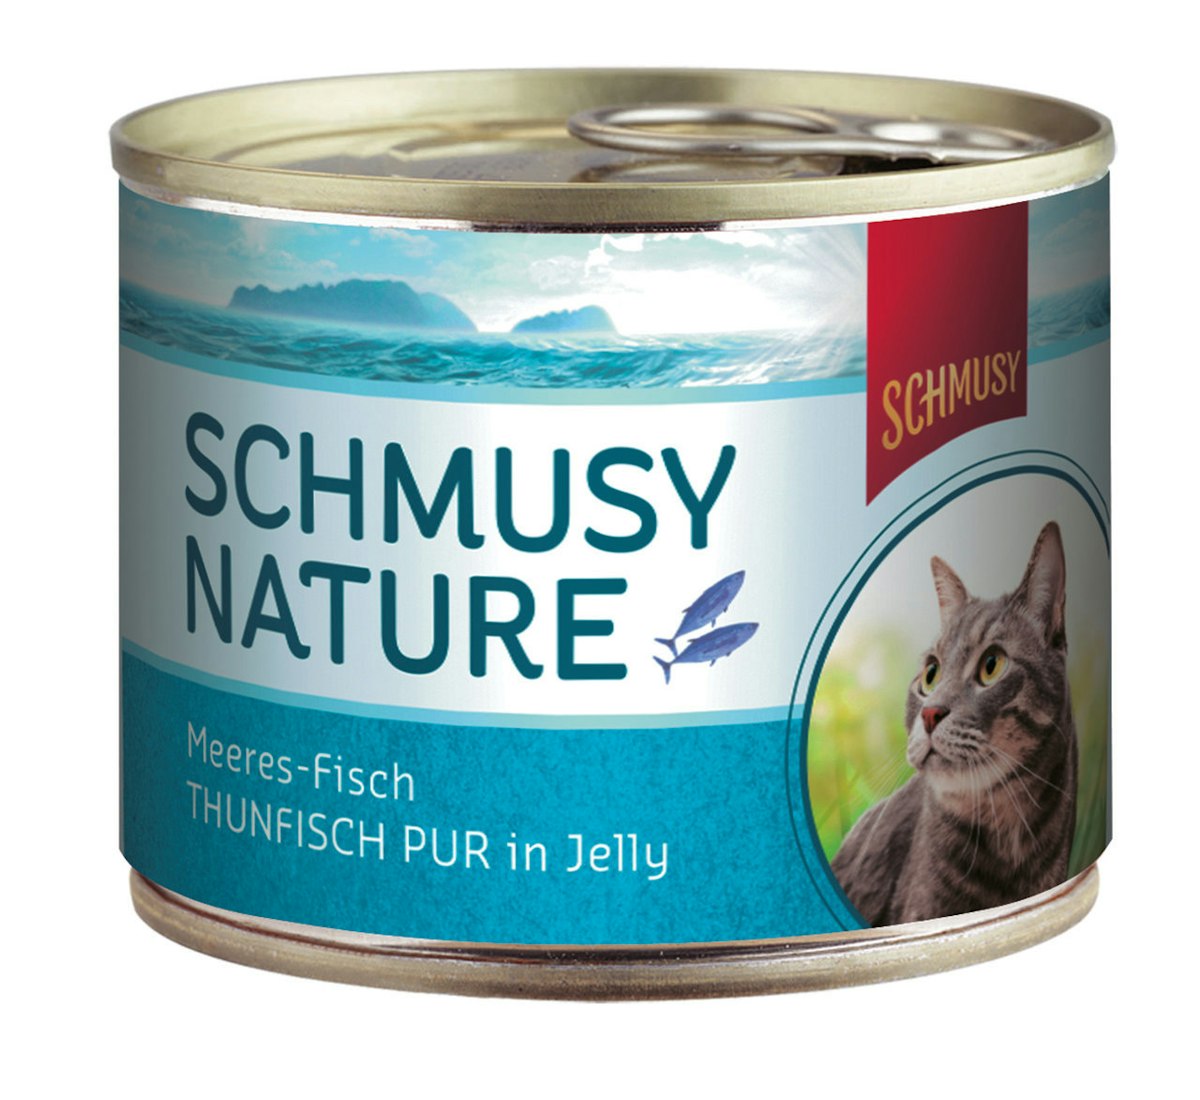 SCHMUSY Nature Meeres-Fisch 185g Dose Katzennassfutter von Schmusy